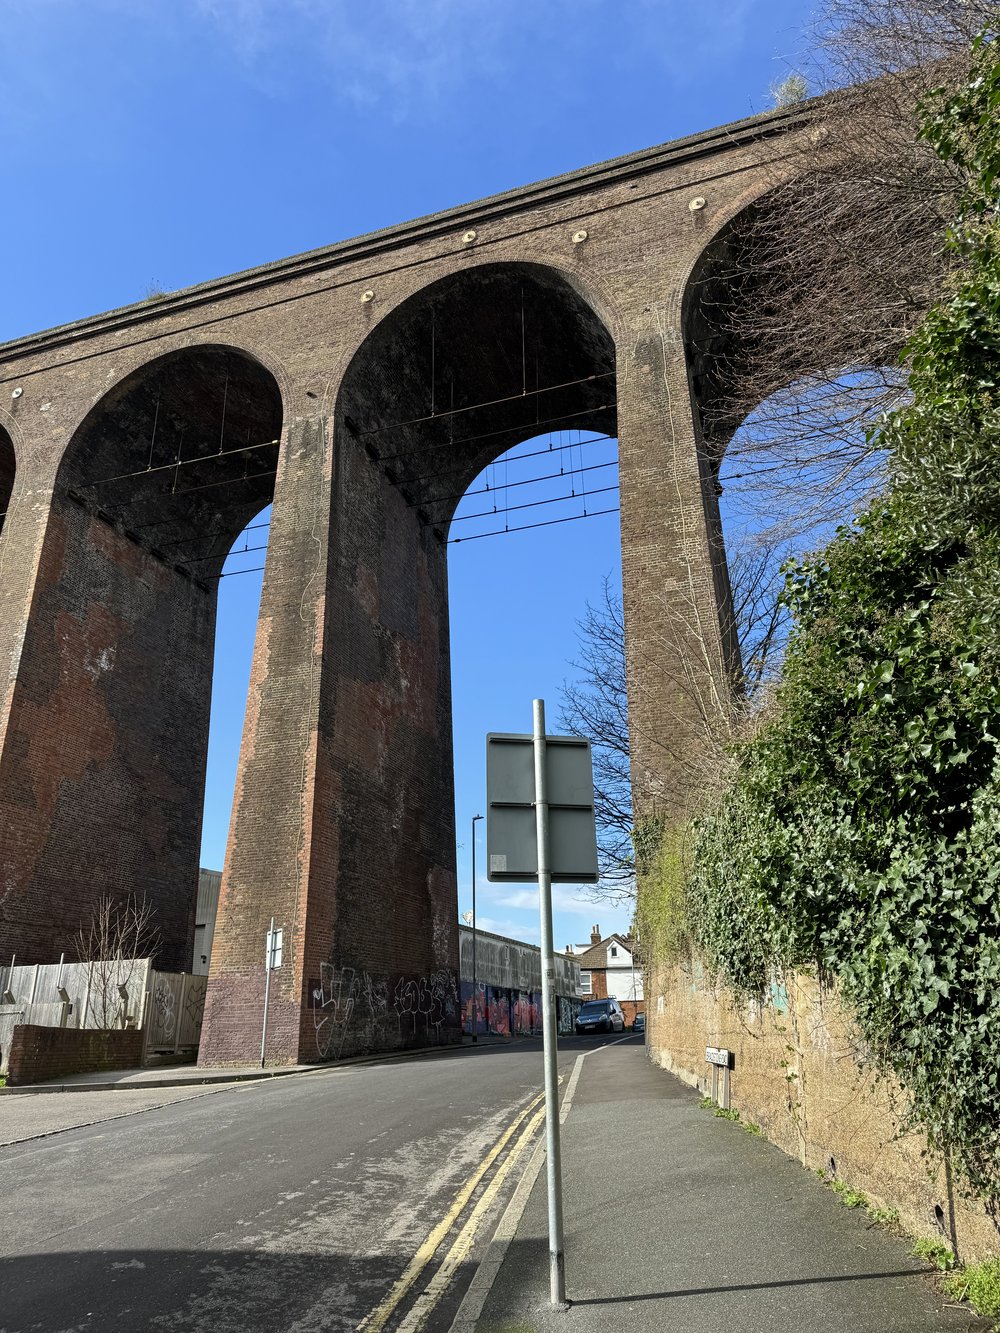 Giant railway arch